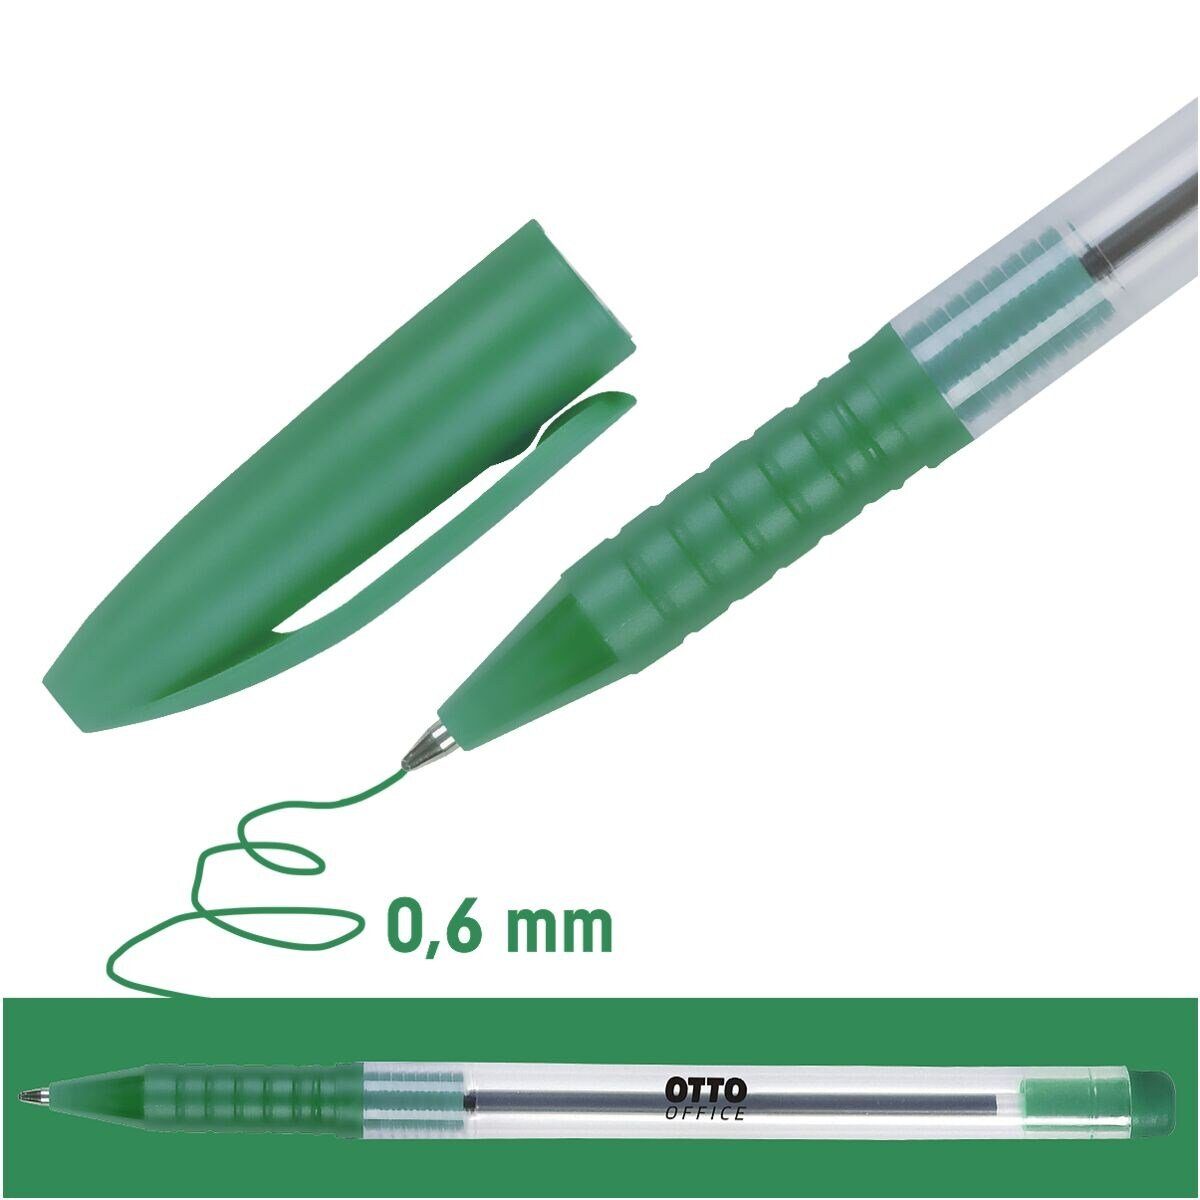 [Herausforderung, Nr. 1 zu sein!] Otto Office Budget Office Budget Stick, Gehäuse grün Kugelschreiber Eco transparentes Kunststoff-Taschenclip